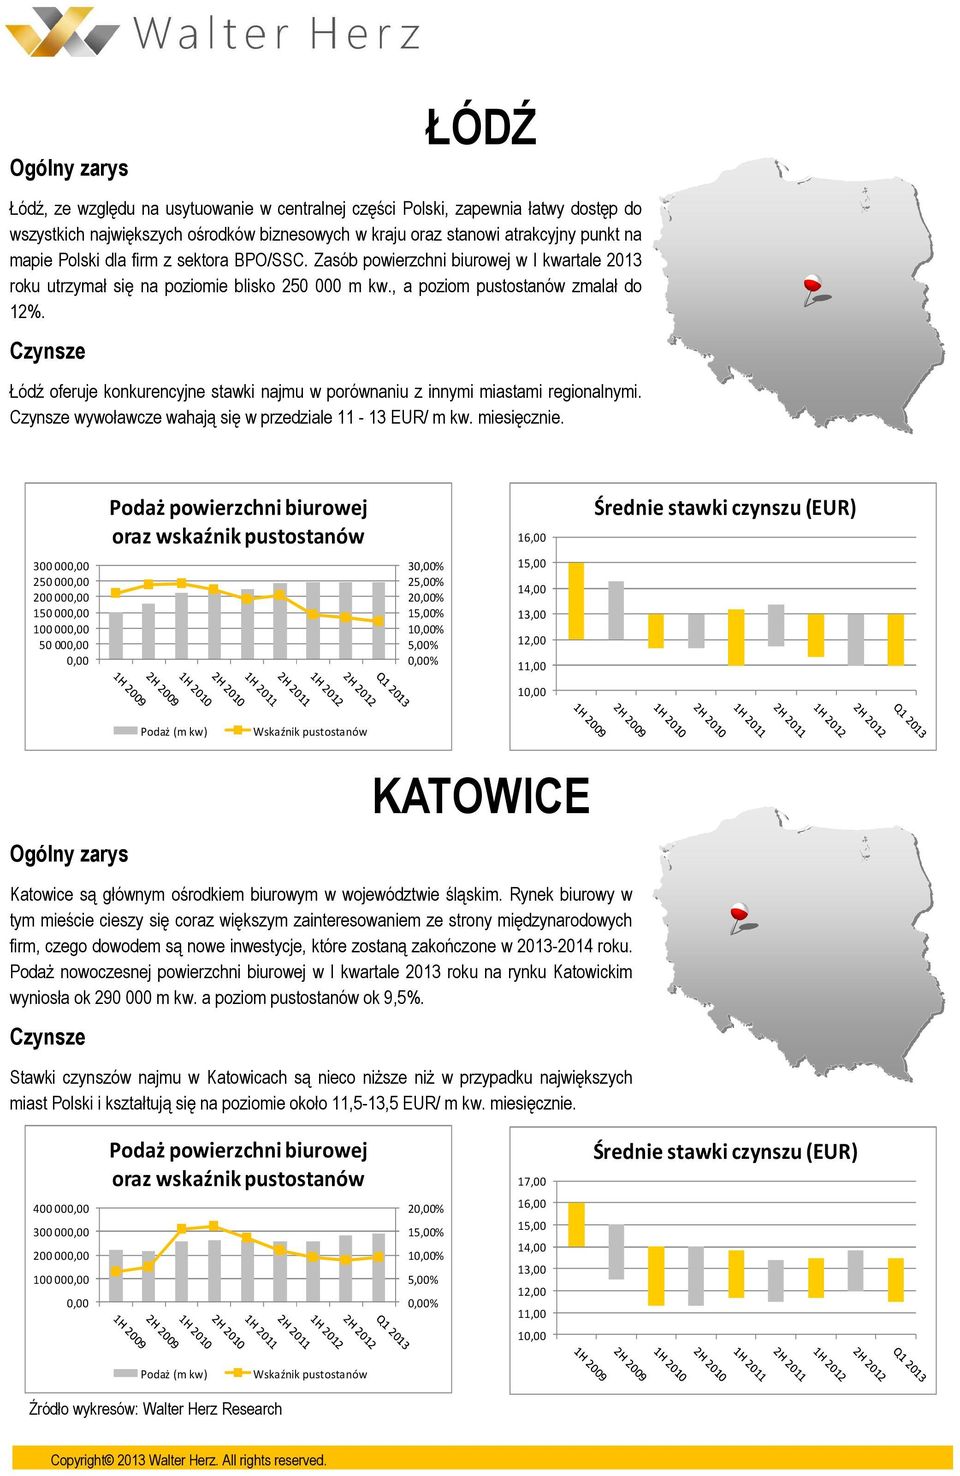 Łódź oferuje konkurencyjne stawki najmu w porównaniu z innymi miastami regionalnymi. wywoławcze wahają się w przedziale 11-13 EUR/ m kw. miesięcznie.